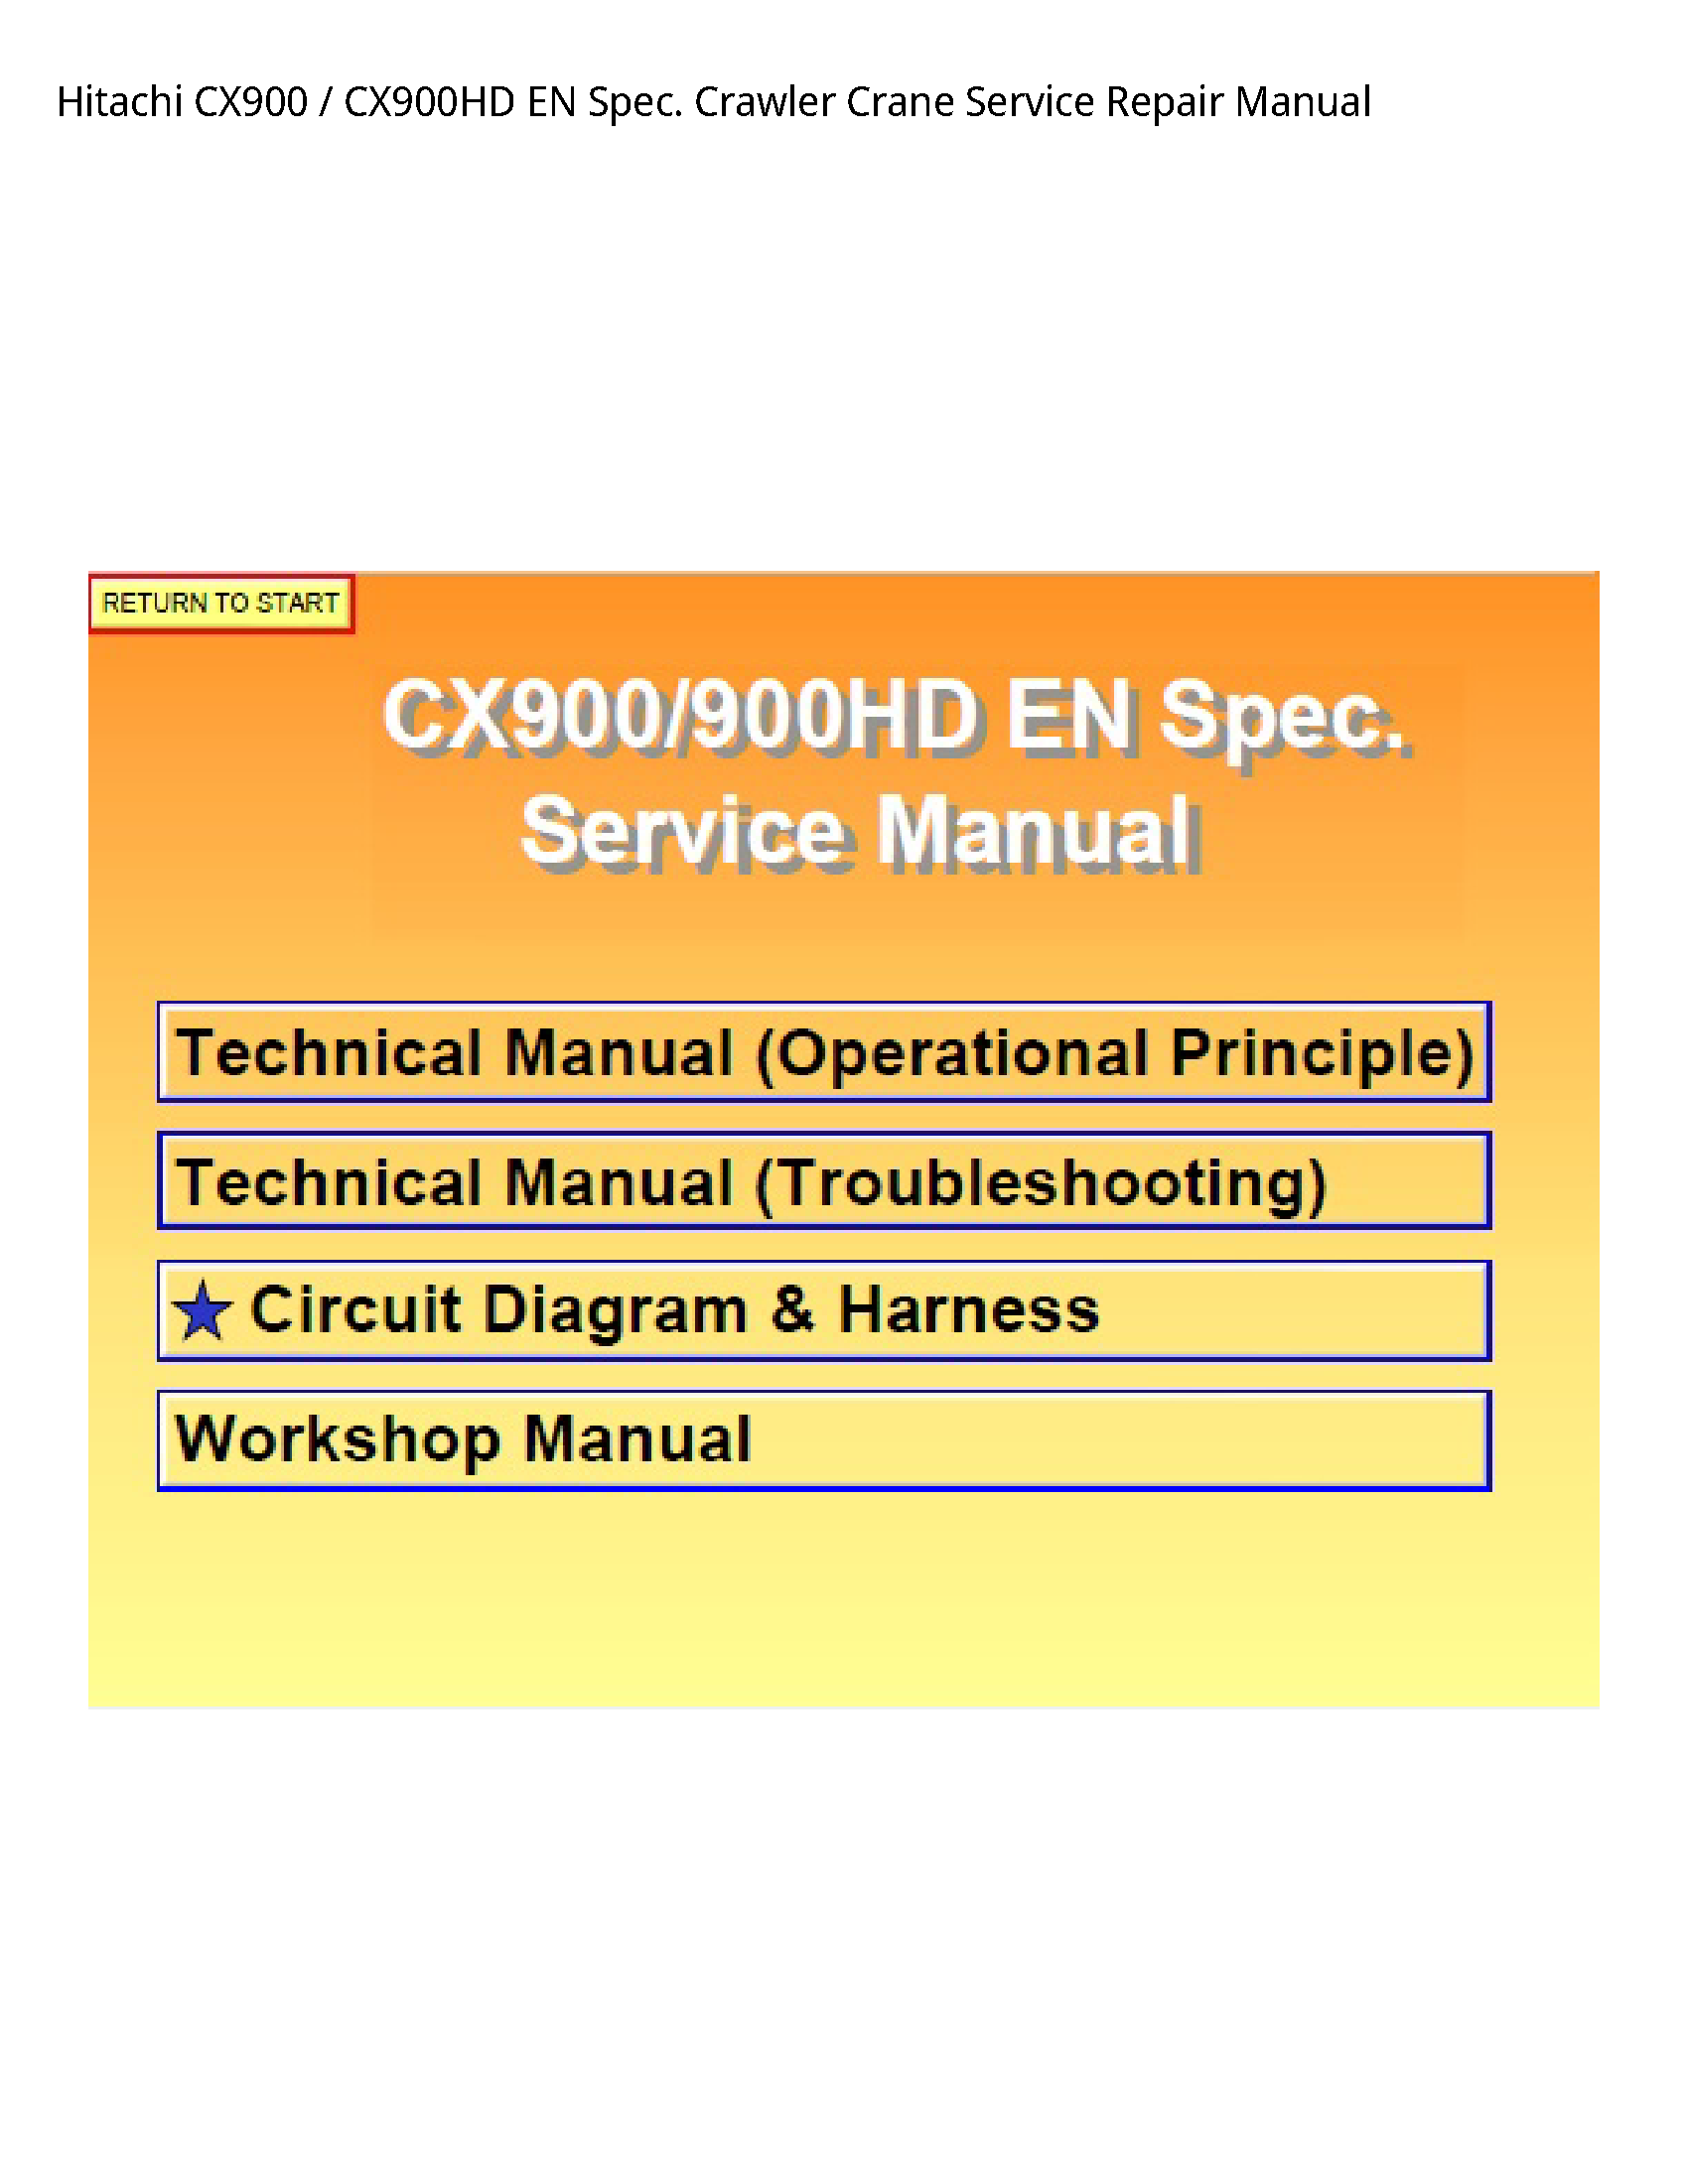 Hitachi CX900 EN Spec. Crawler Crane manual